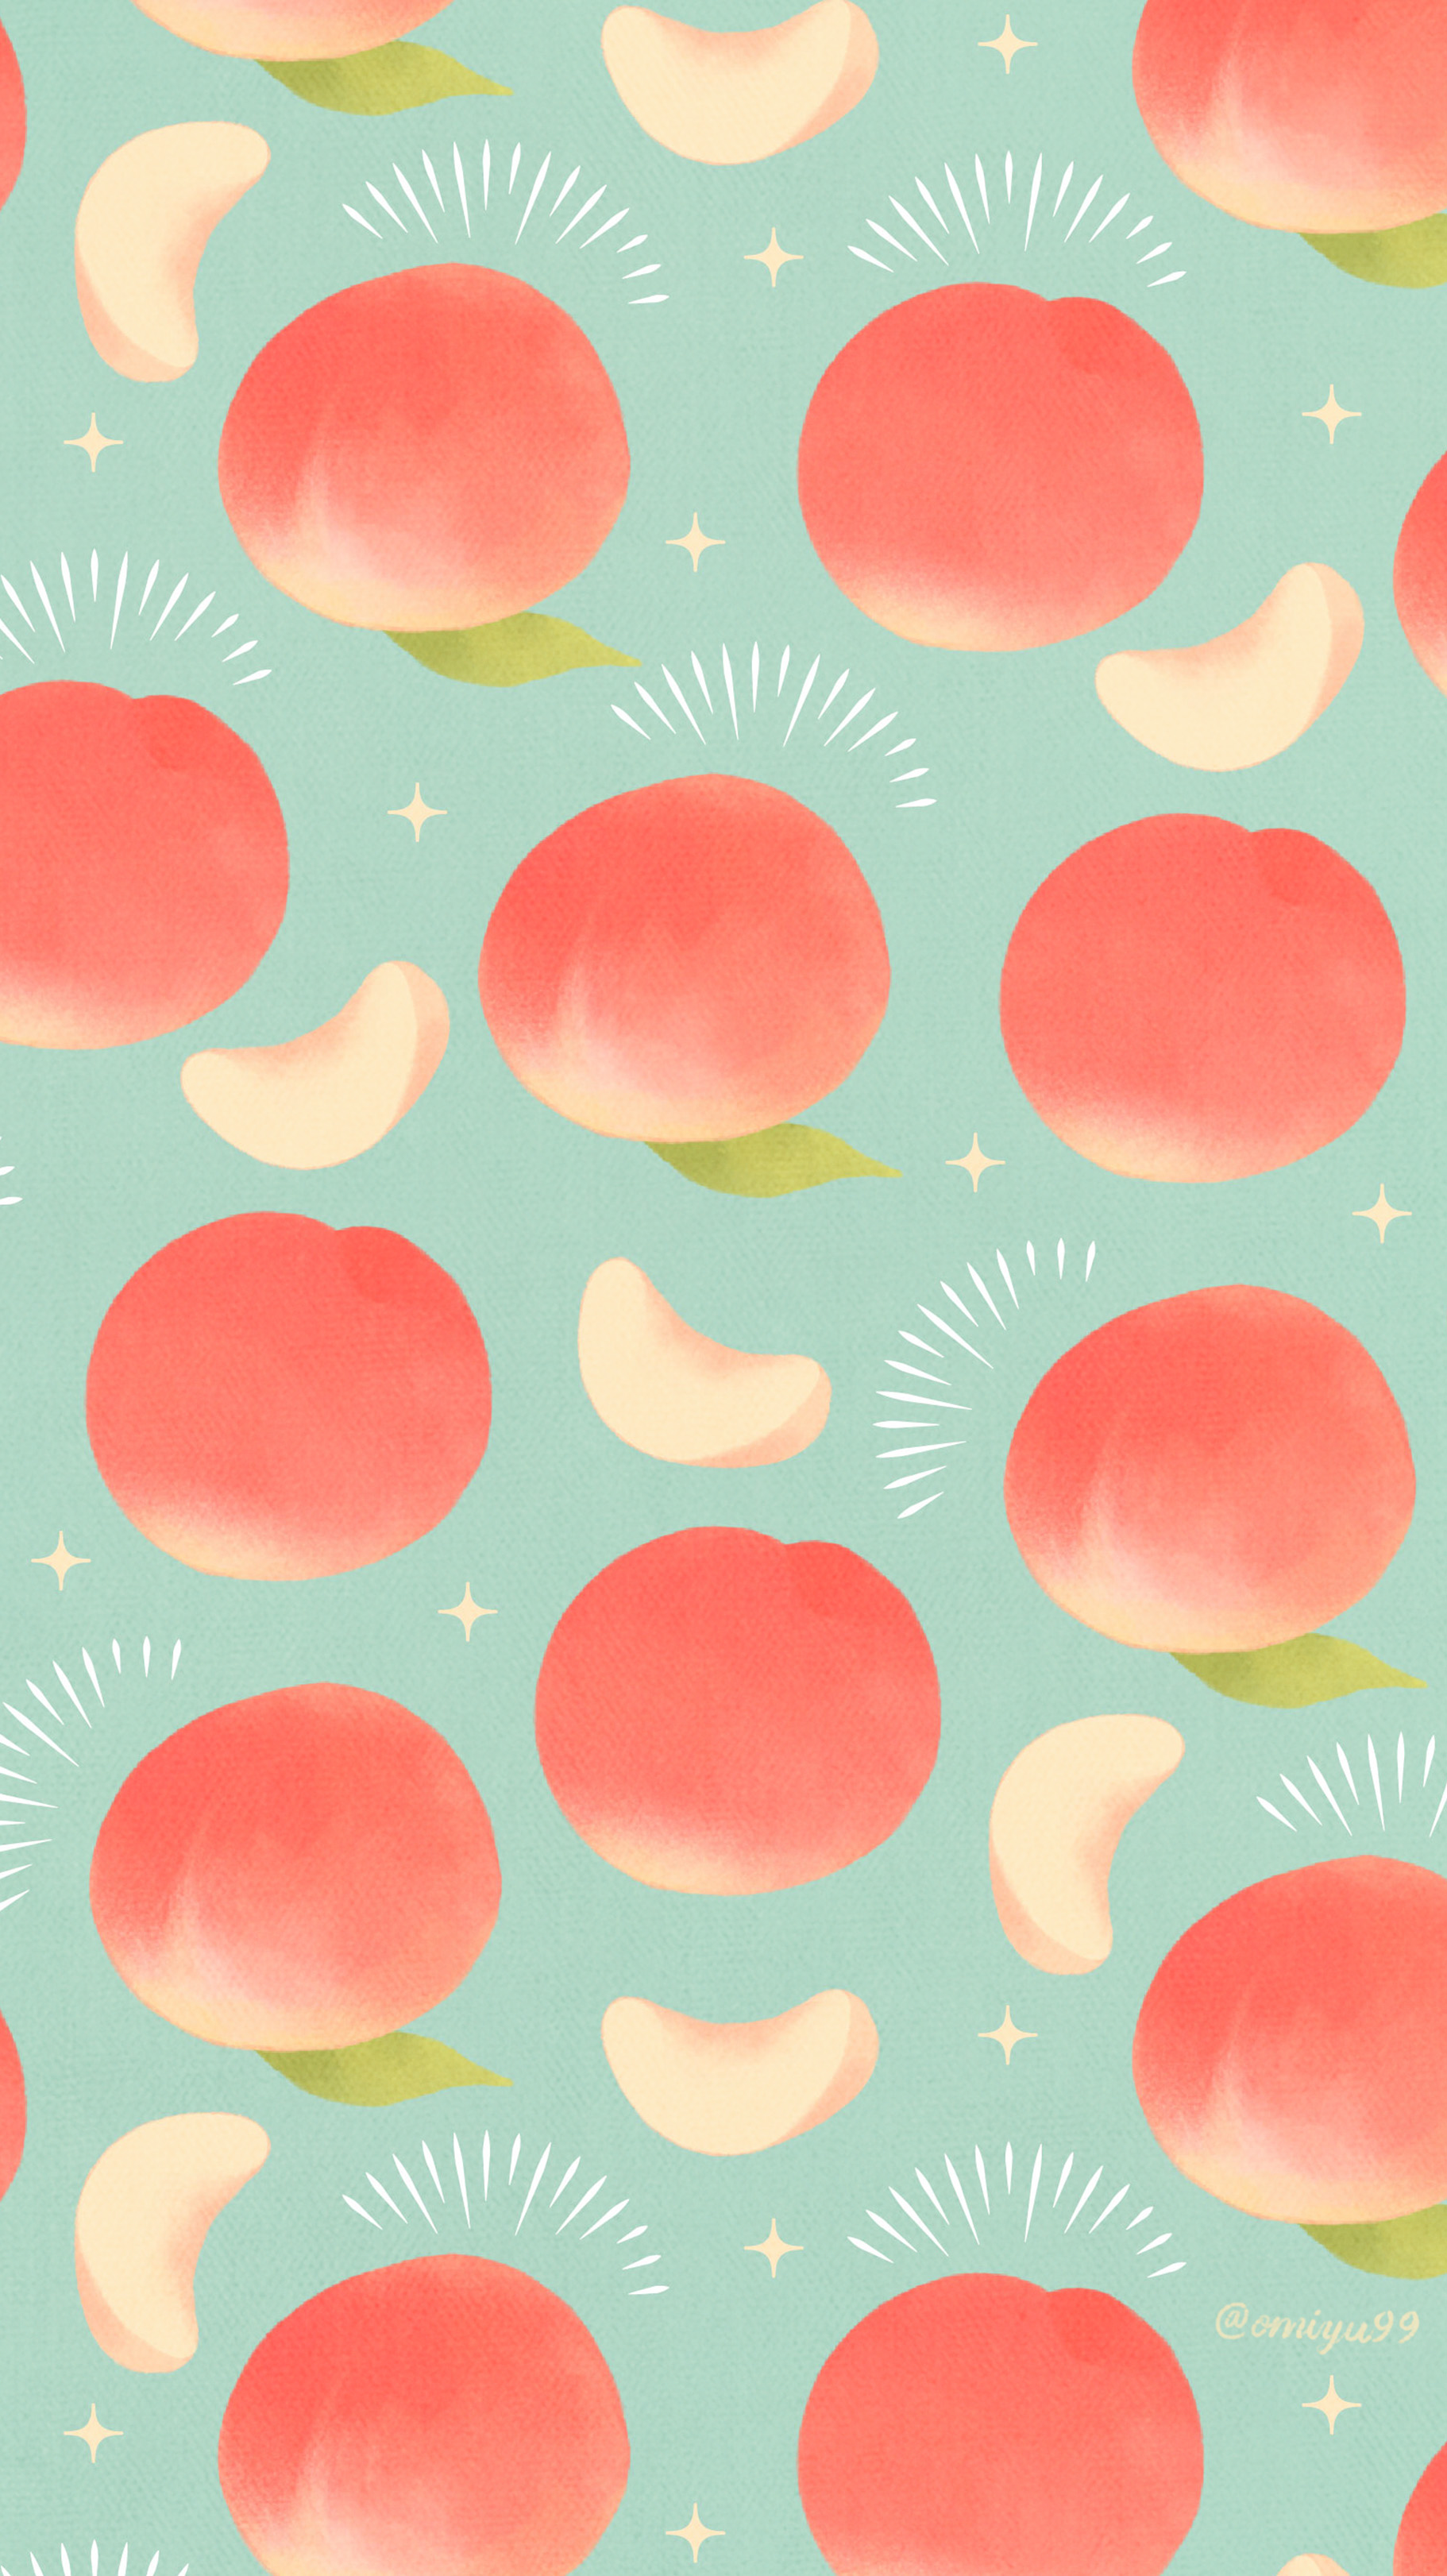 تويتر Omiyu على تويتر ピーチな壁紙 Illust Illustration 壁紙 イラスト Iphone壁紙 桃 Peach 食べ物 T Co 44dcpbdzve